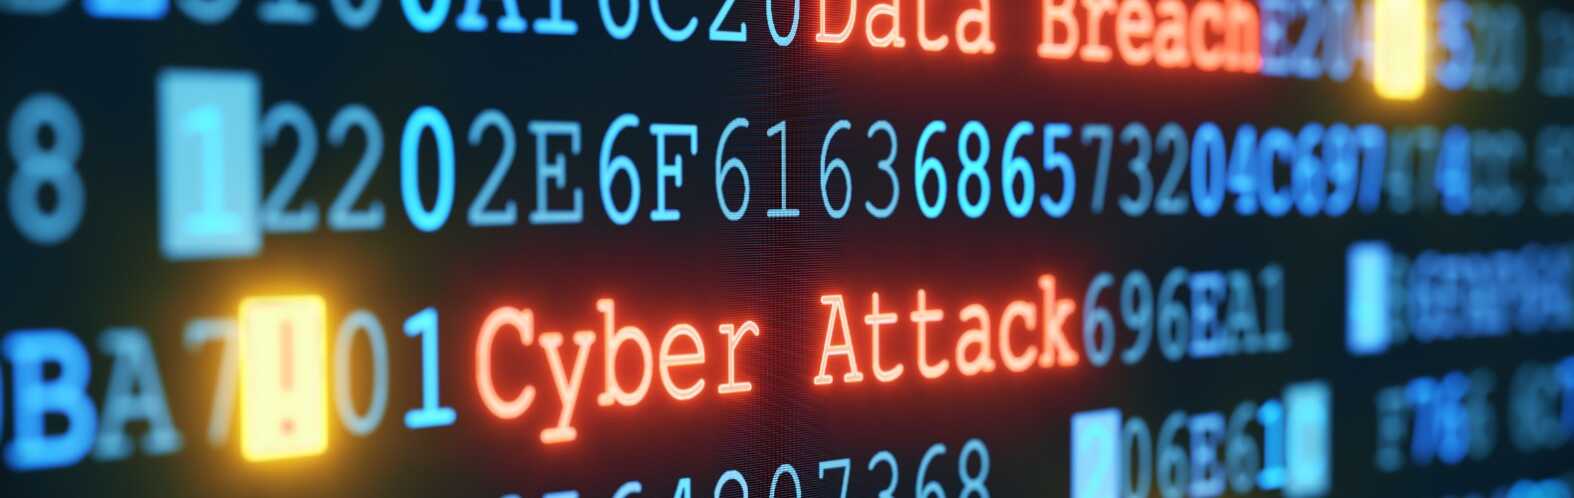 Cyber Attack A02